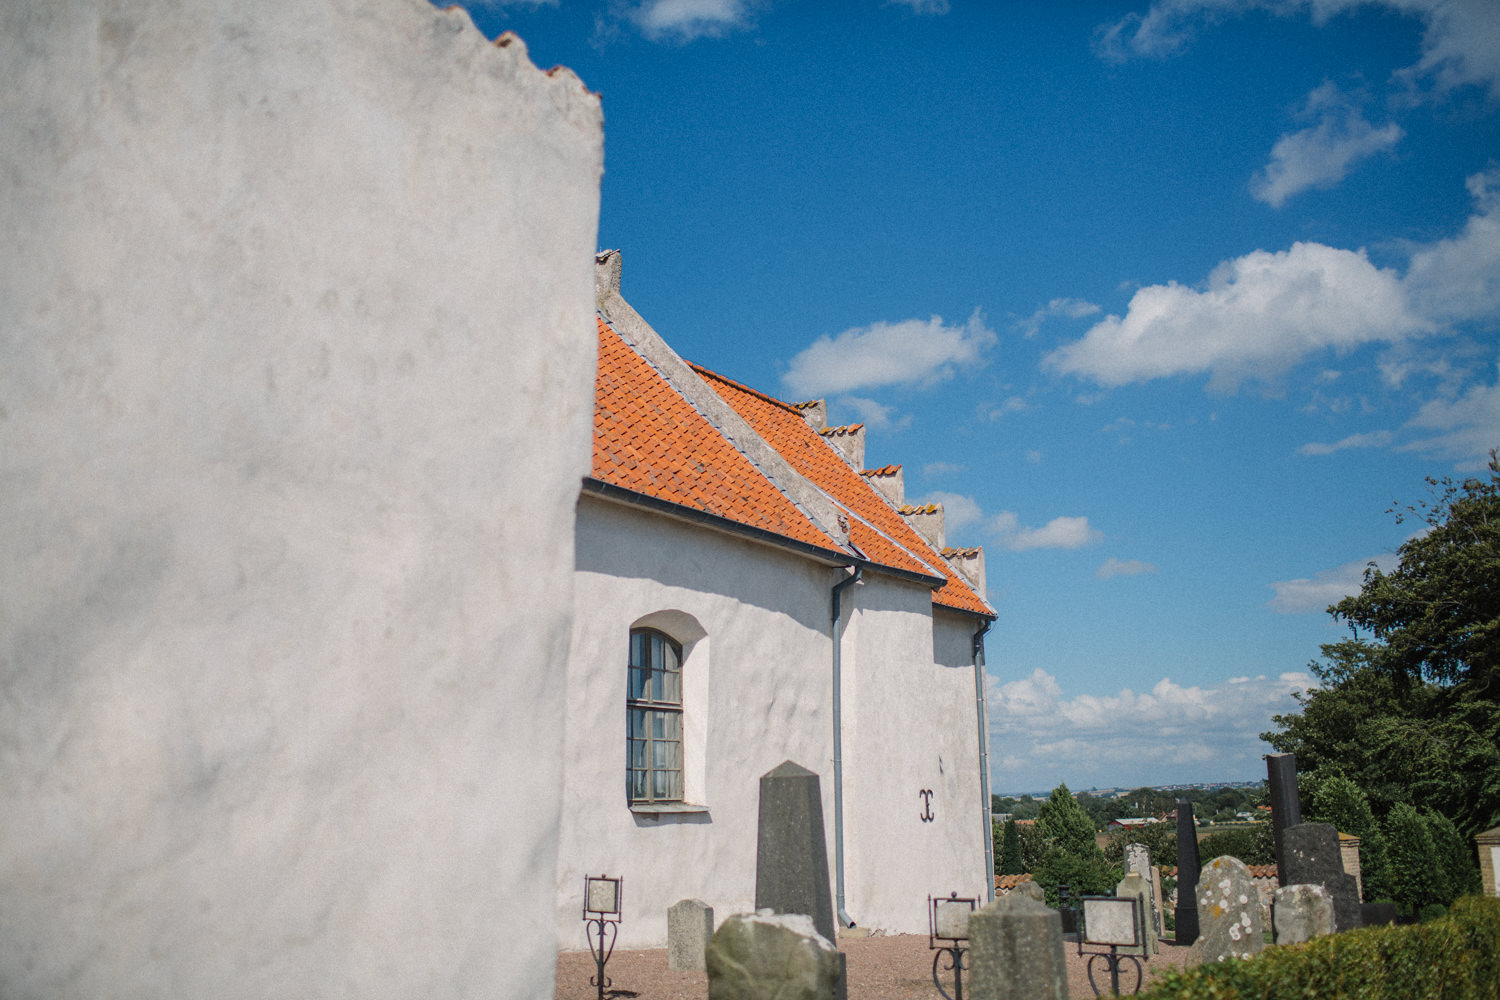 Svenskt-amerikanskt bröllop på Ven, Skåne. Platsen är Sankt Ibbs gamla kyrka, Skåne.